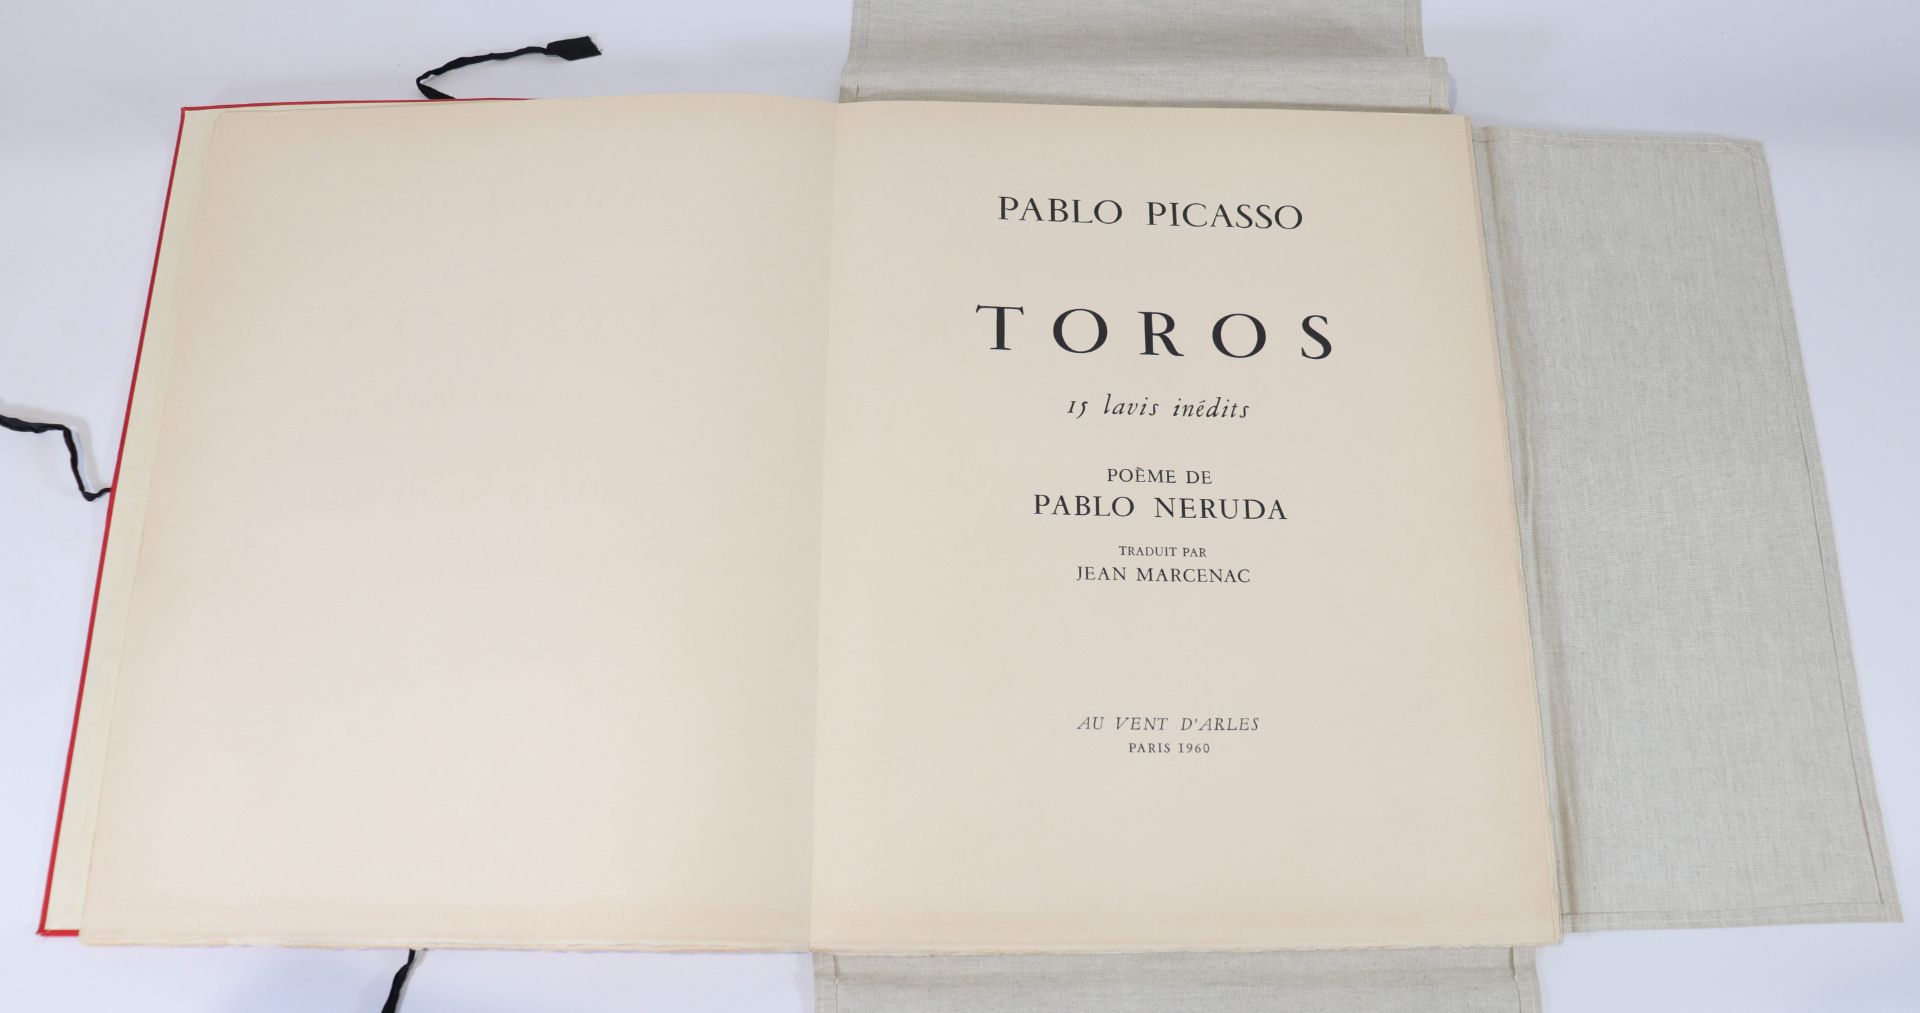 Pablo Picasso (1881-1973) - complete portfolio "TOROS" - Bild 3 aus 19